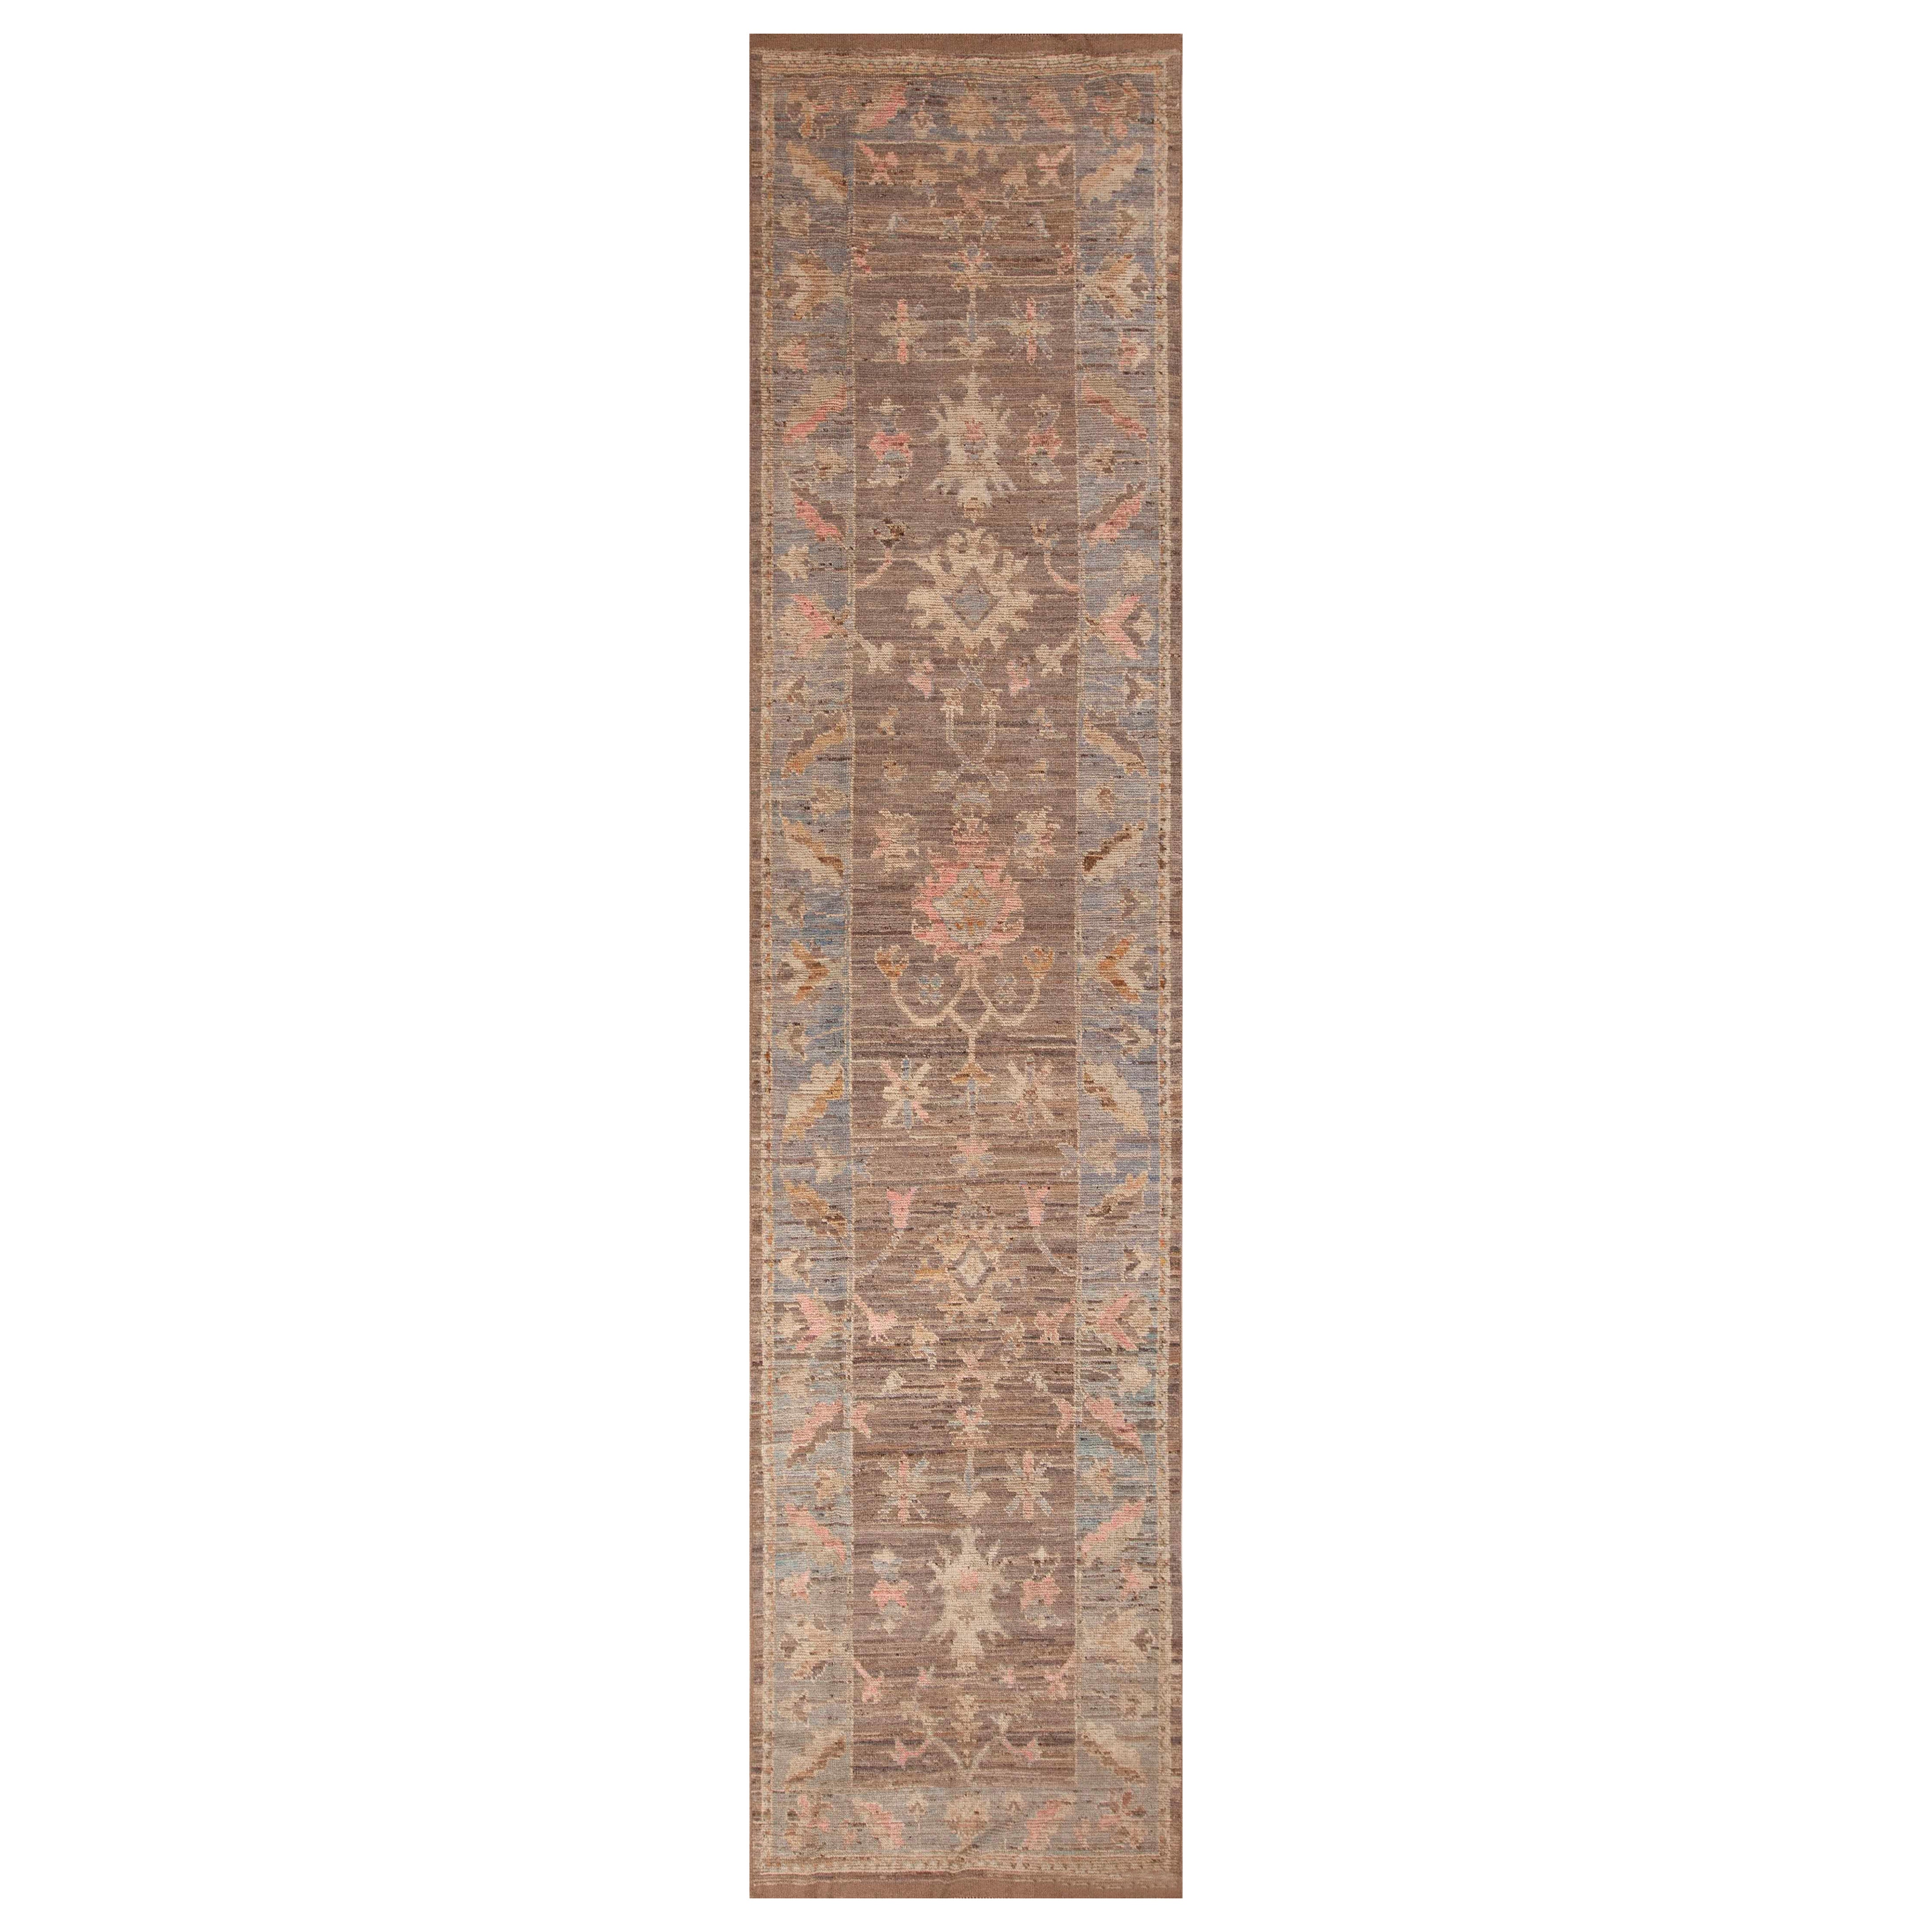 Nazmiyal Collection Oushak Design Floral Design Modern Hallway Rug 3'9" x 16' For Sale